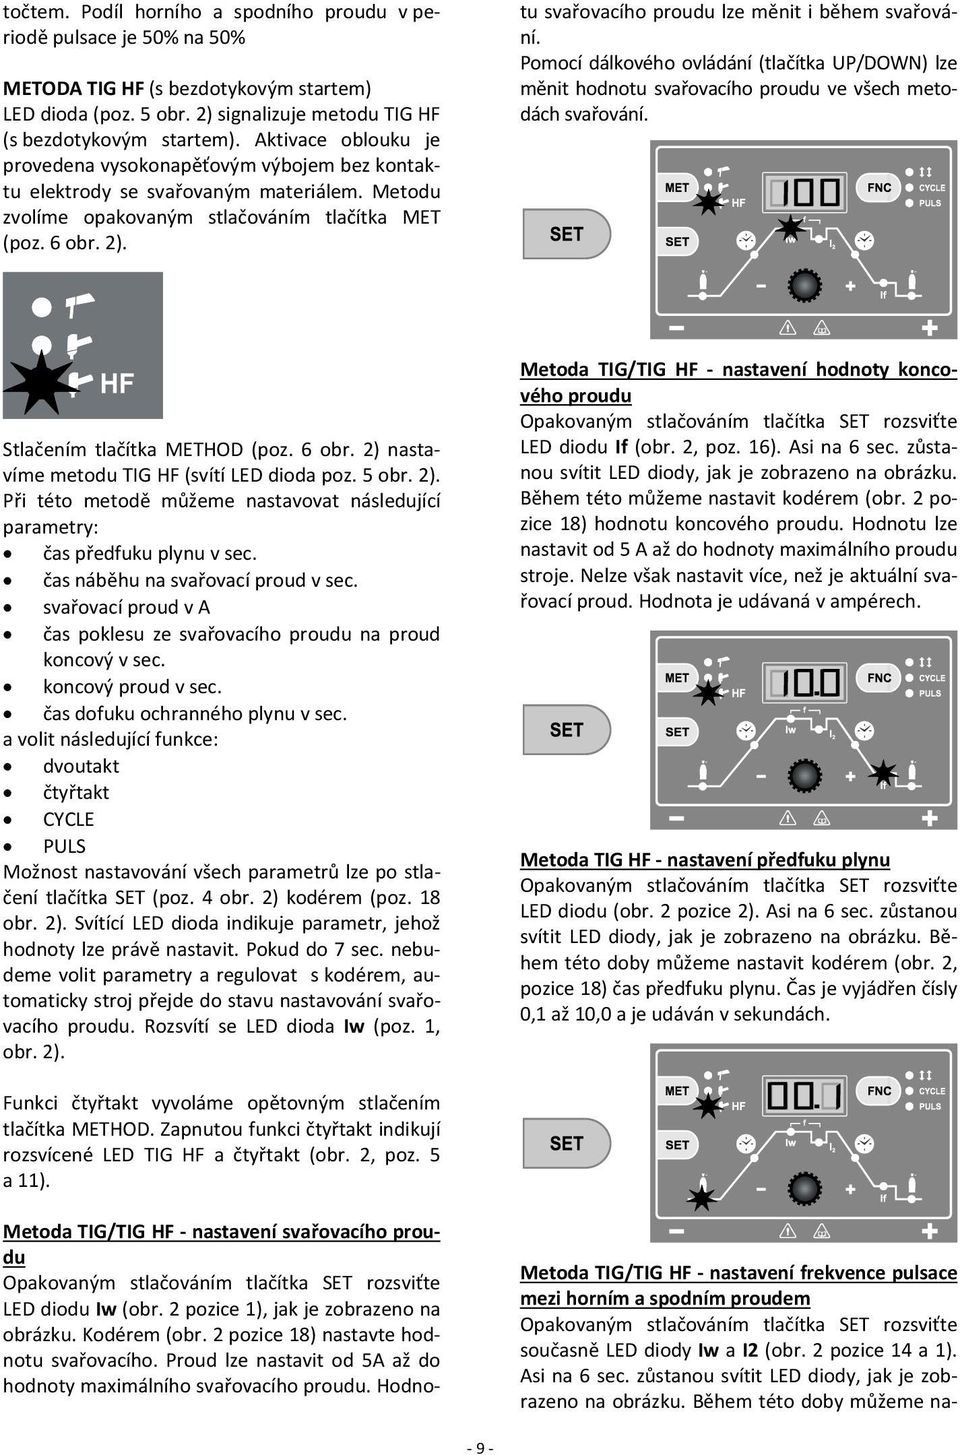 Metoda TIG/TIG HF nastavení svařovacího proudu Opakovaným stlačováním tlačítka SET rozsviťte LED diodu Iw (obr. 2 pozice 1), jak je zobrazeno na obrázku. Kodérem (obr.